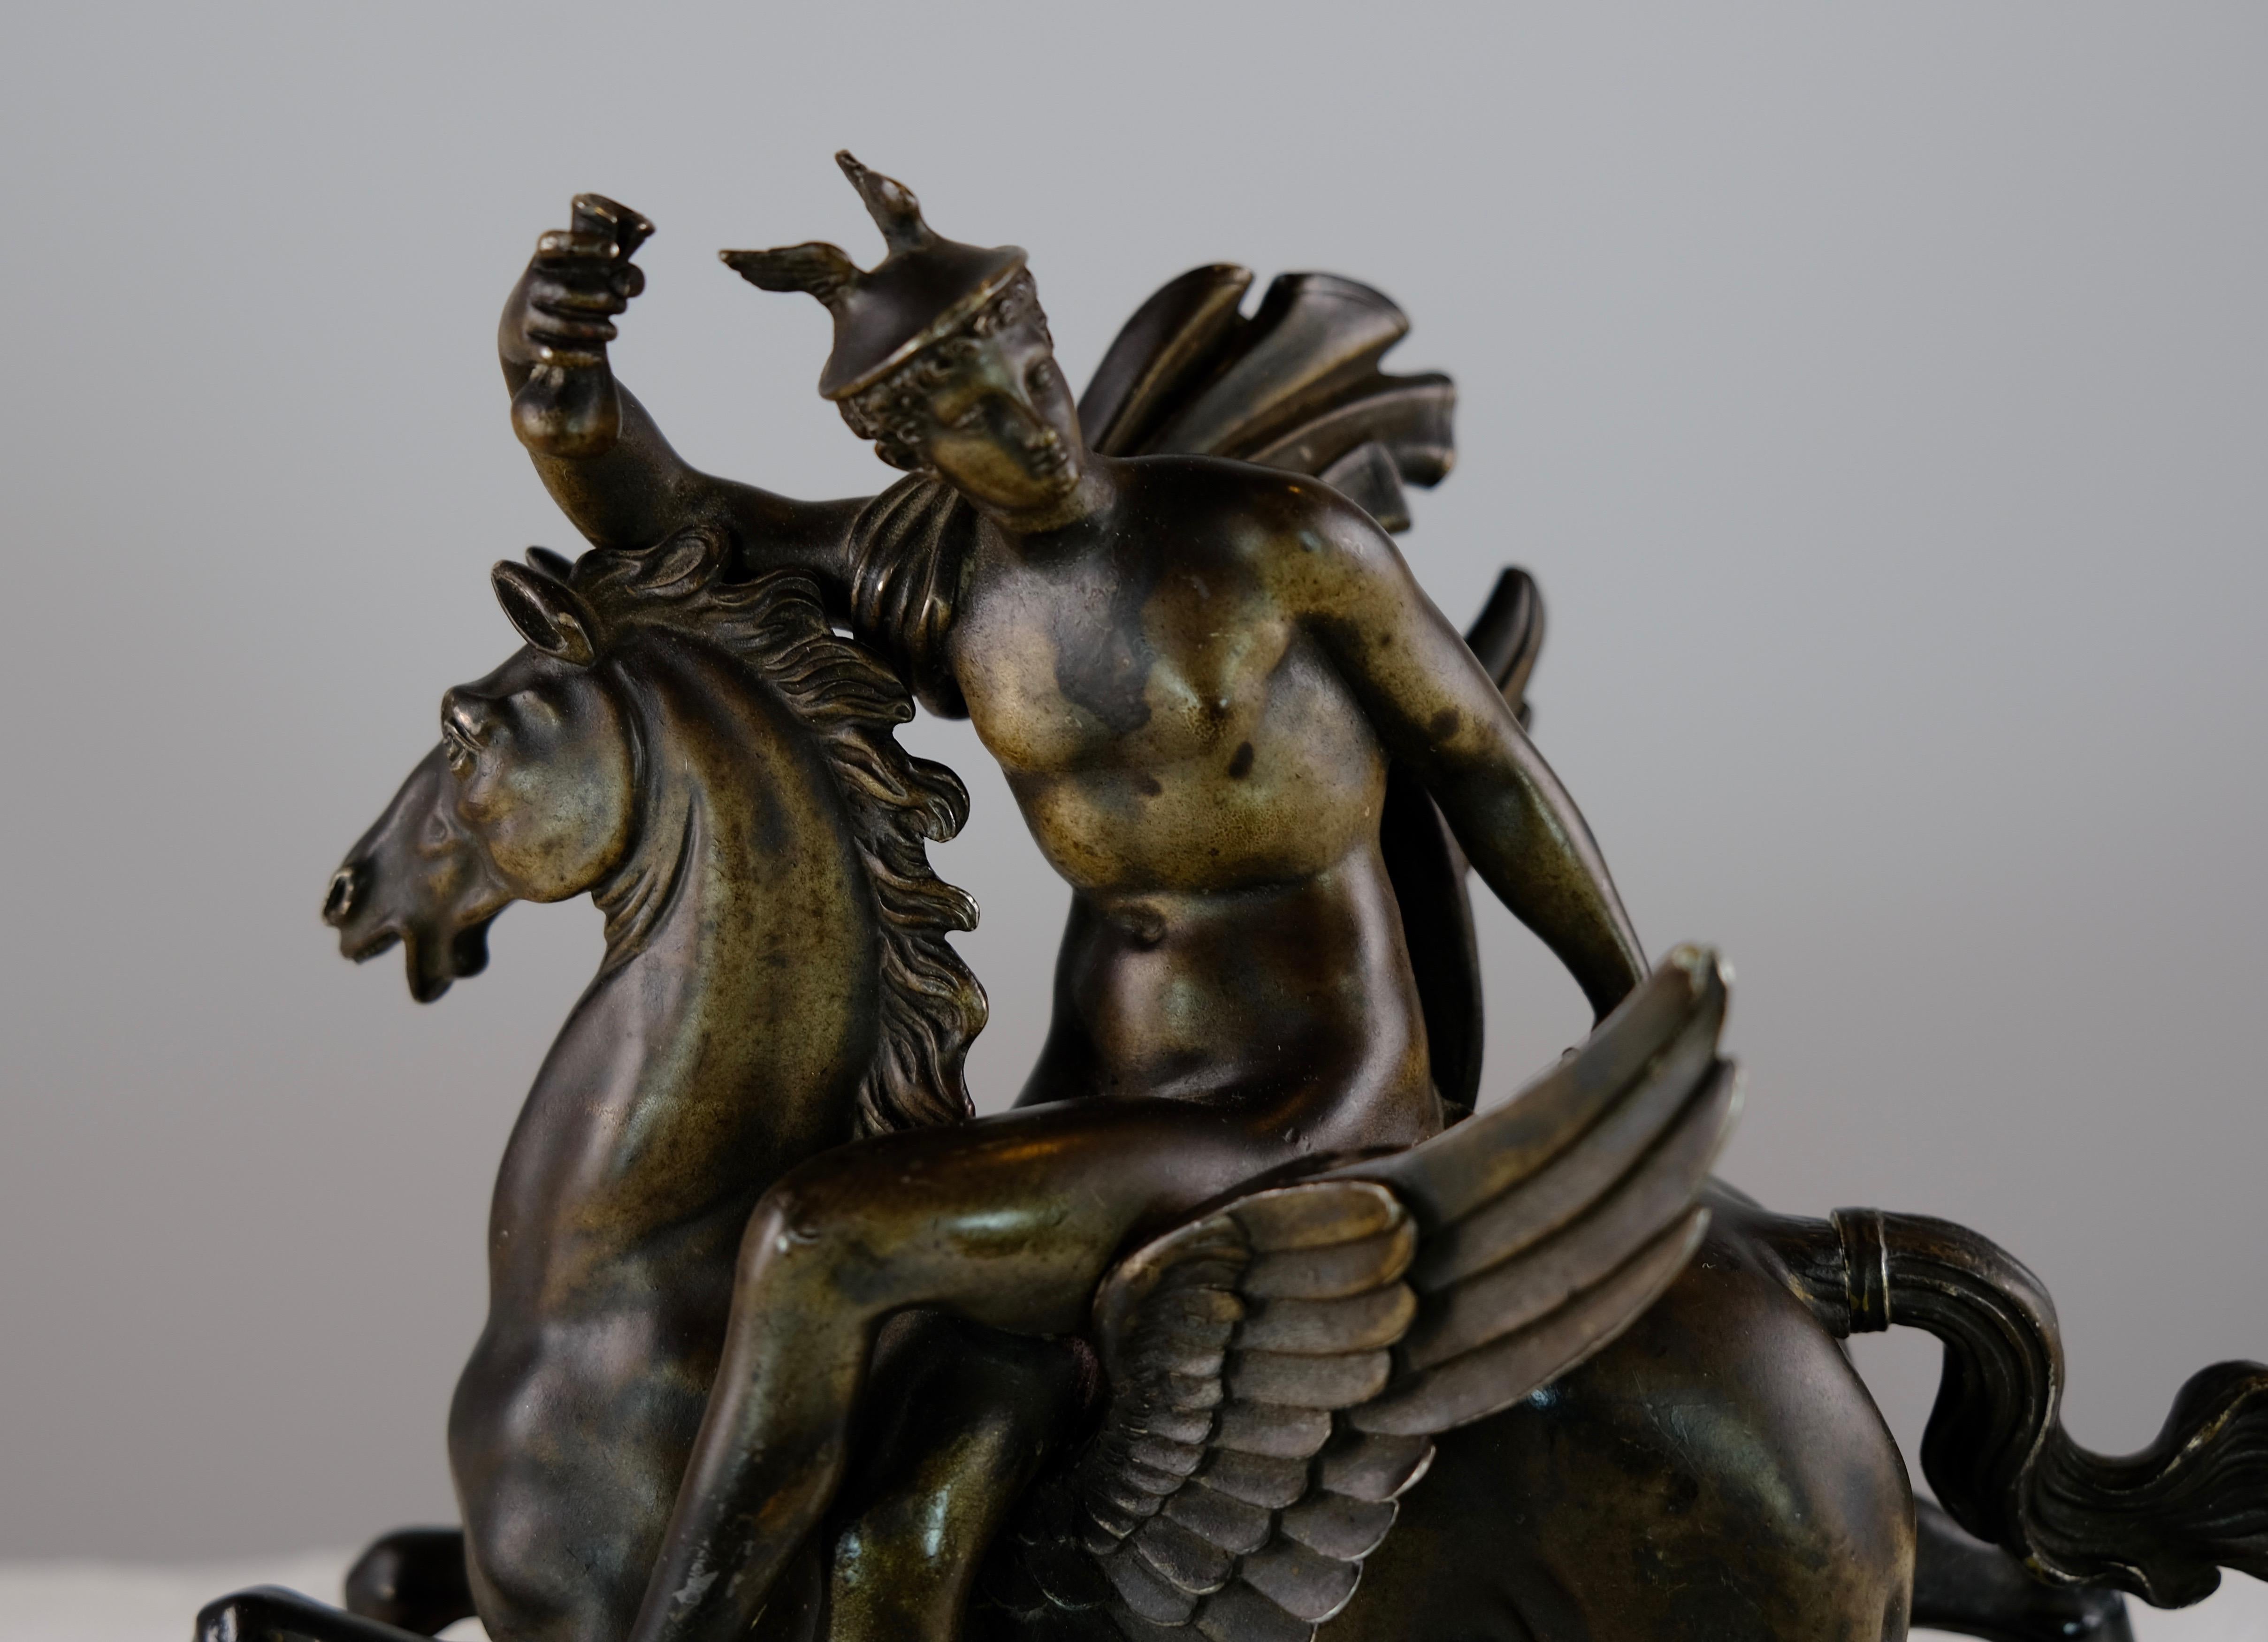 Cast Sculpture Depicting Mercurius Riding Pegasus, Italy Made Around Year 1800